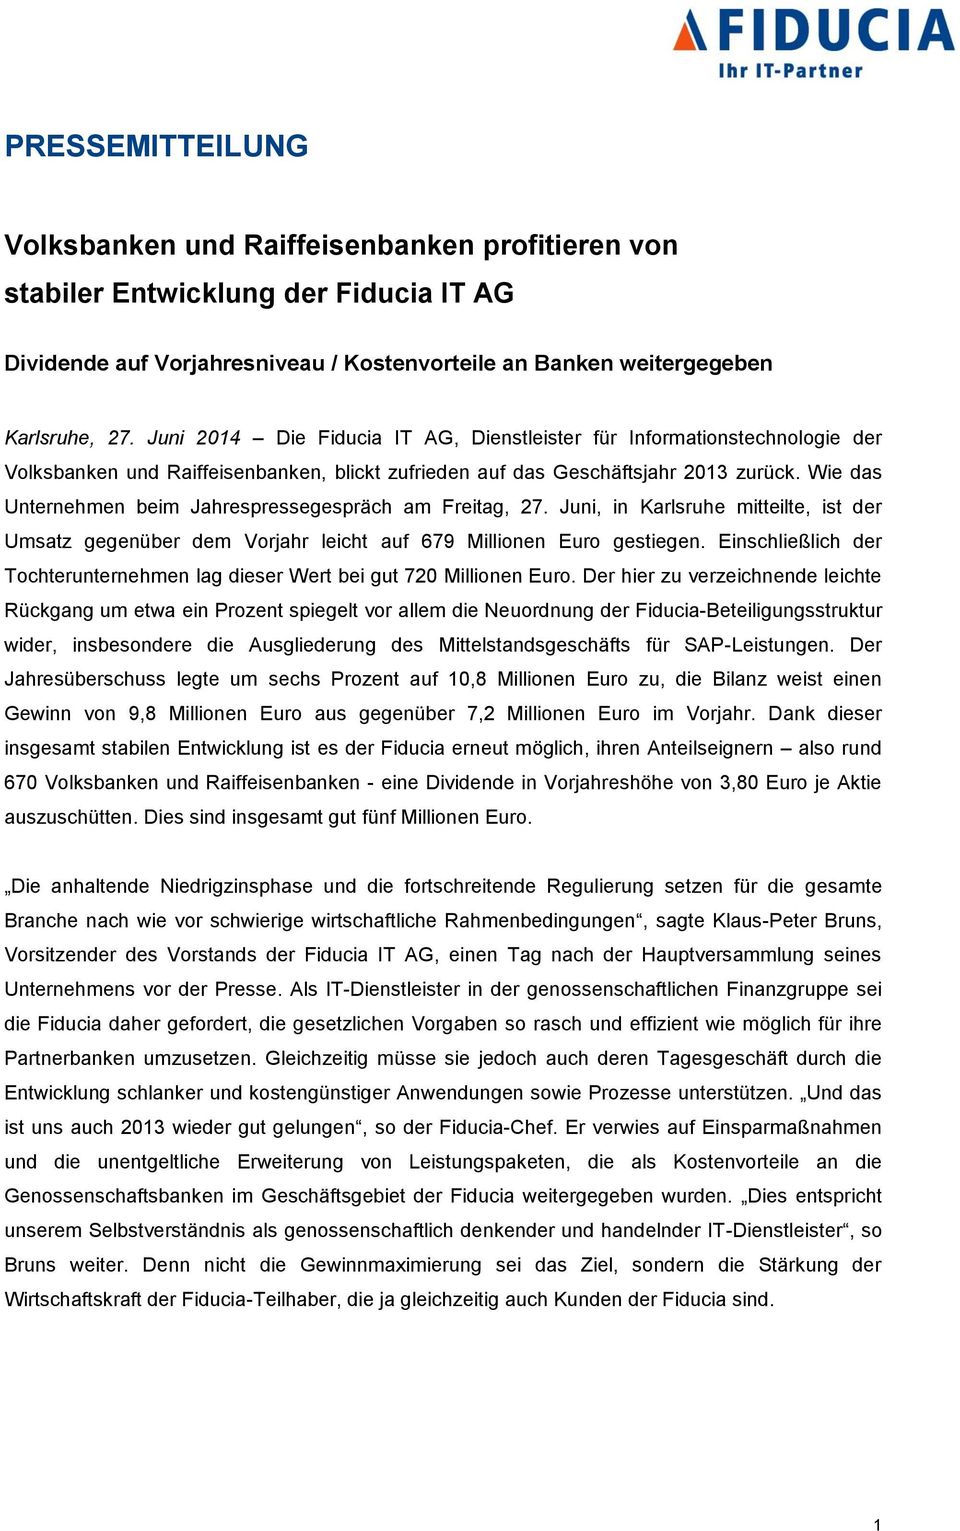 Wie das Unternehmen beim Jahrespressegespräch am Freitag, 27. Juni, in Karlsruhe mitteilte, ist der Umsatz gegenüber dem Vorjahr leicht auf 679 Millionen Euro gestiegen.